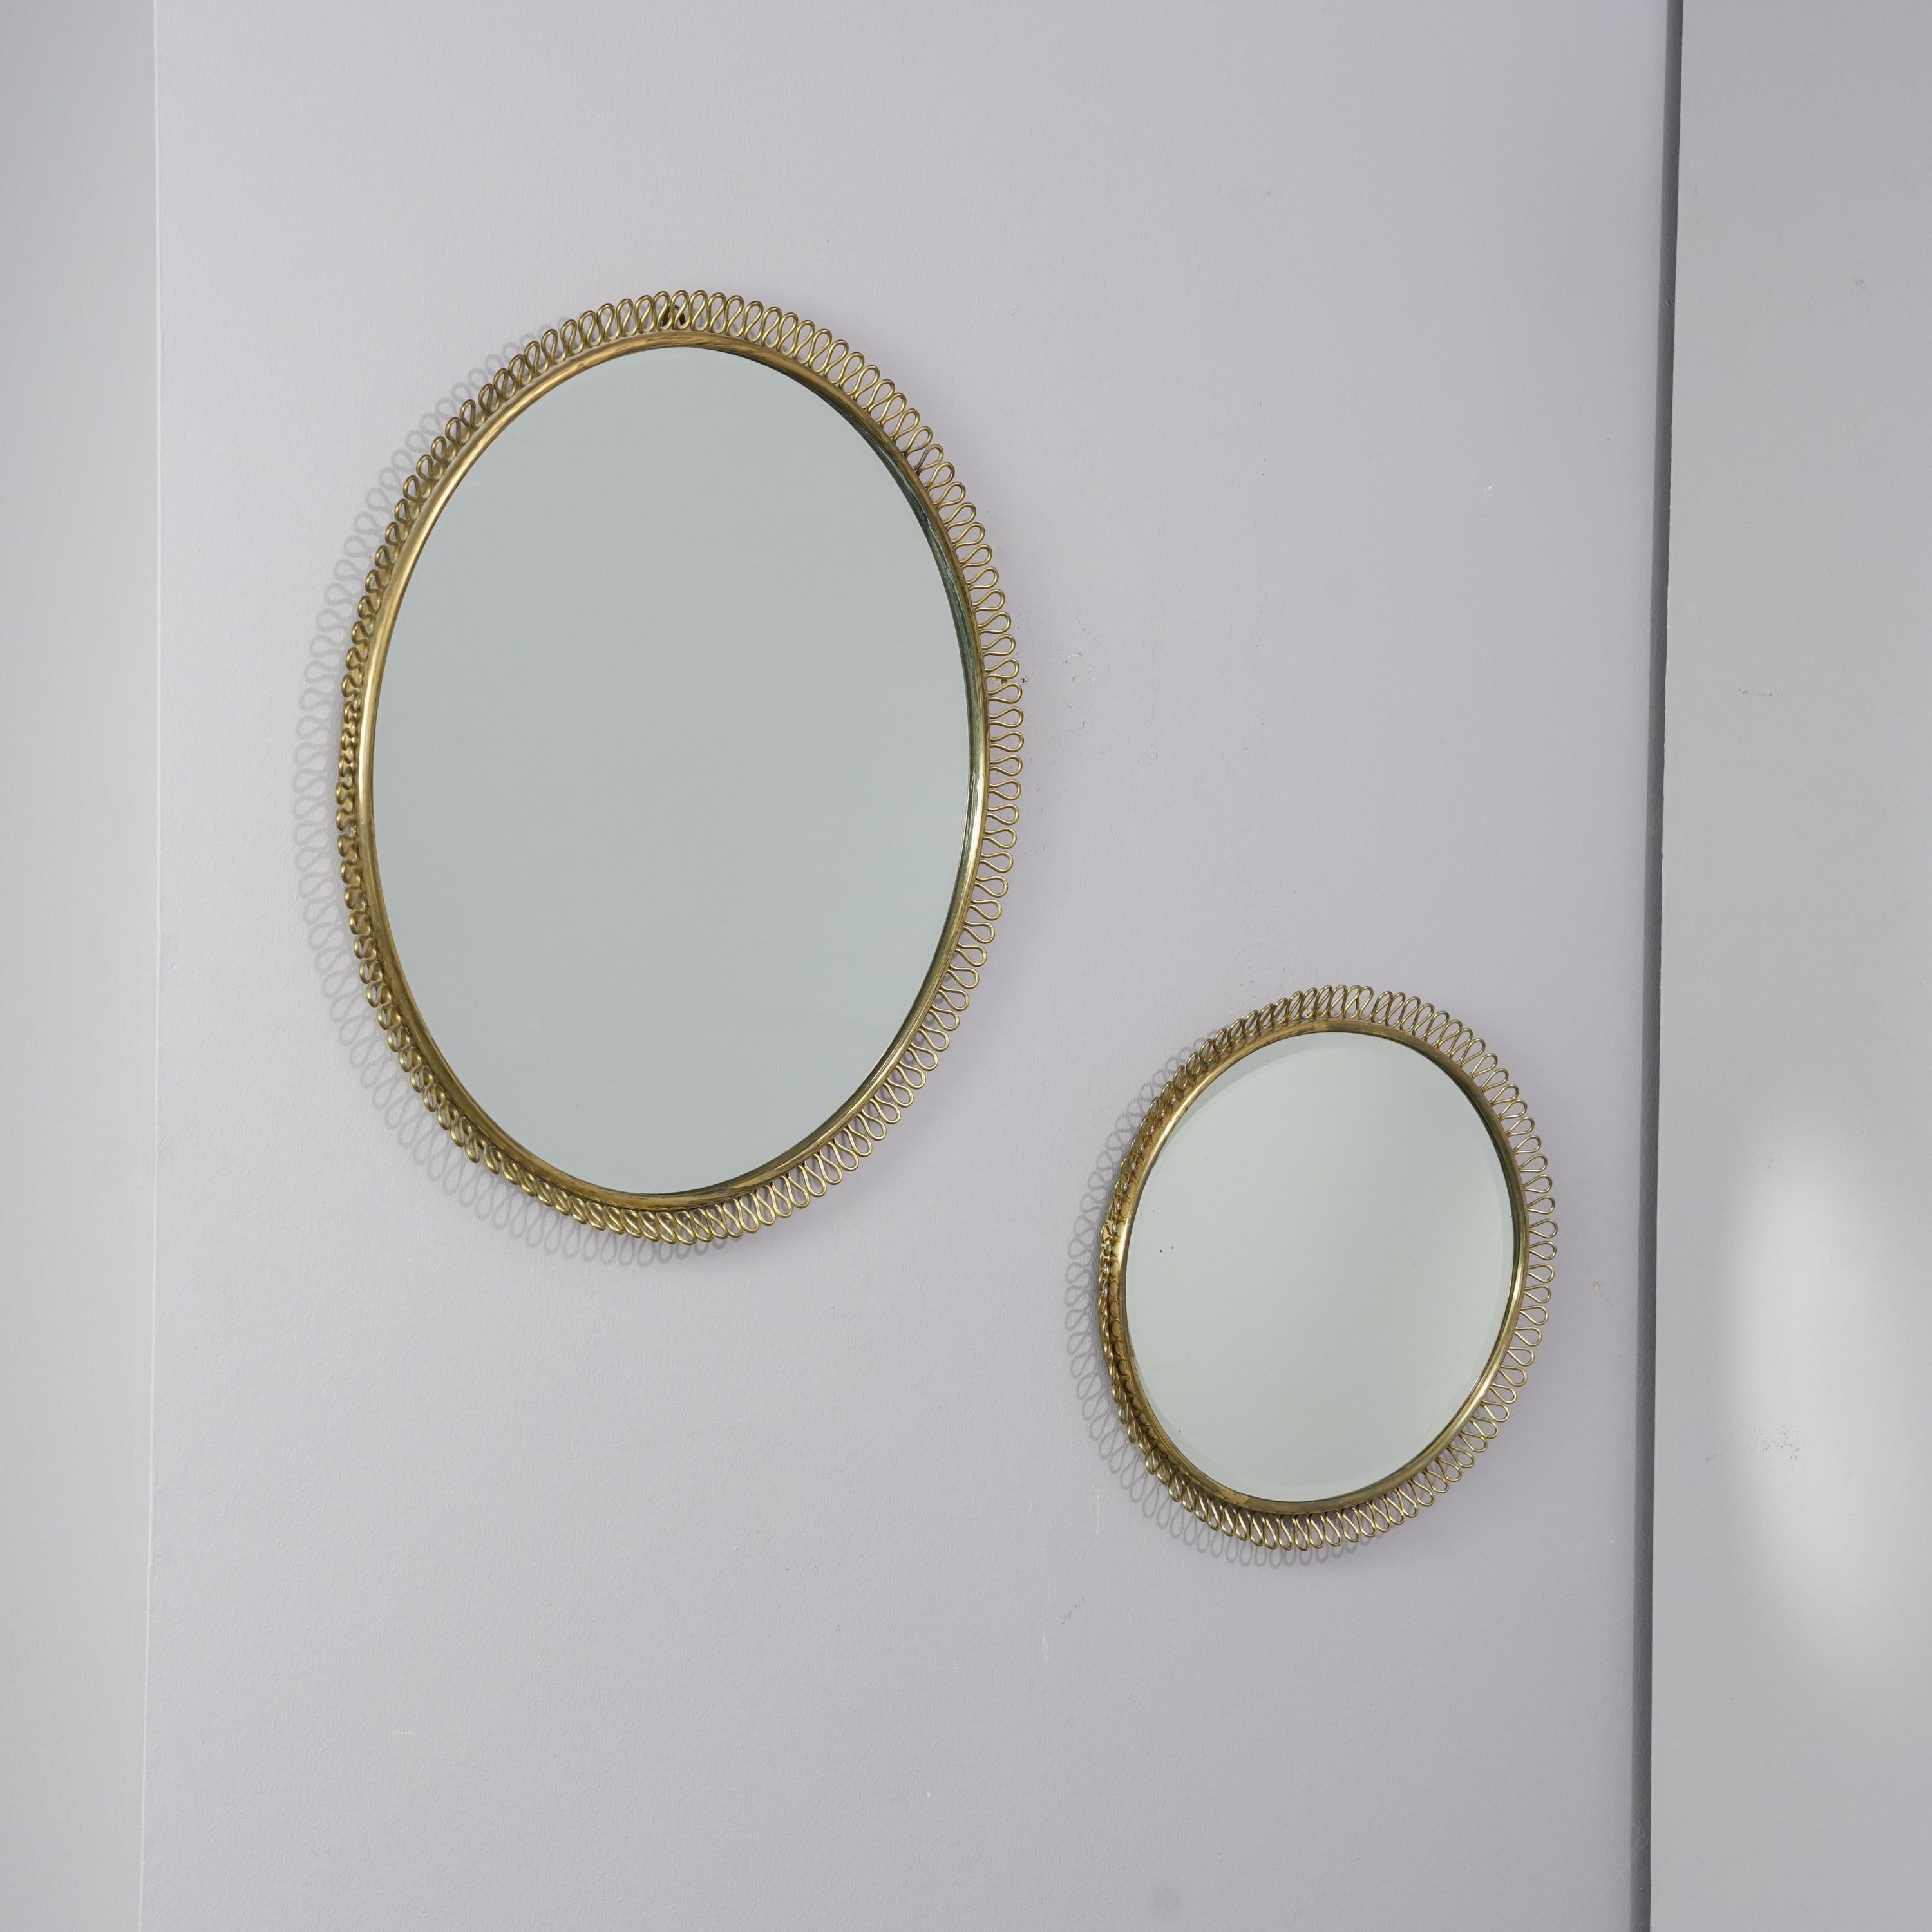 Rarissimes miroirs muraux dessinés par Antti Hakkarainen pour Taidetakomo Hakkarainen, tampon en bas, circa 1930s, laiton, très bon état, usure mineure conforme à l'âge et à l'usage. Les rétroviseurs sont vendus comme un ensemble. 

Mesures pour les